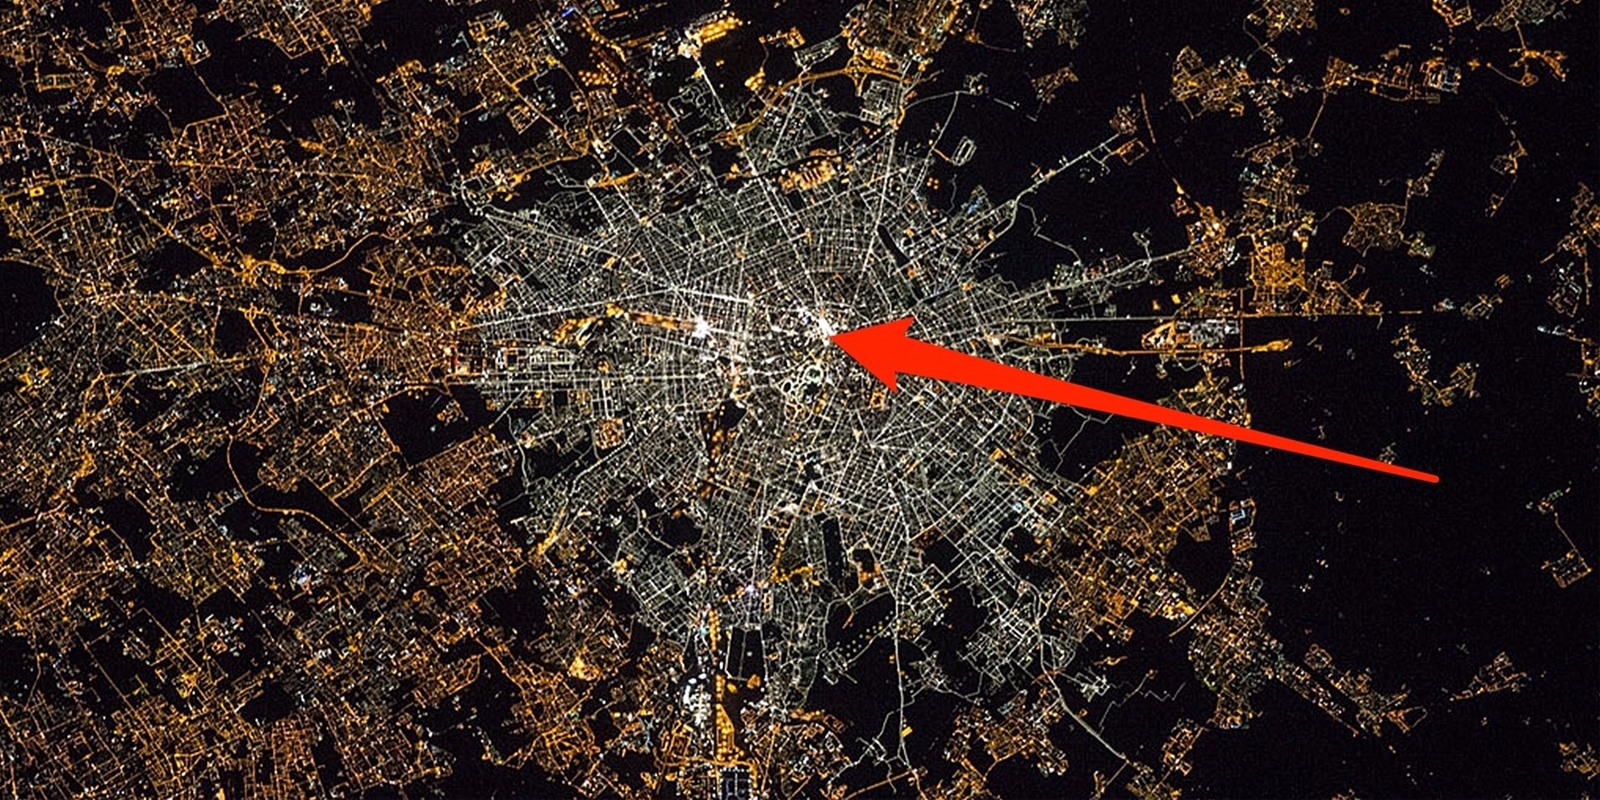 Ánh đèn LED chiếu sáng đường phố tại Milan có thể nhìn thấy được từ vũ trụ.